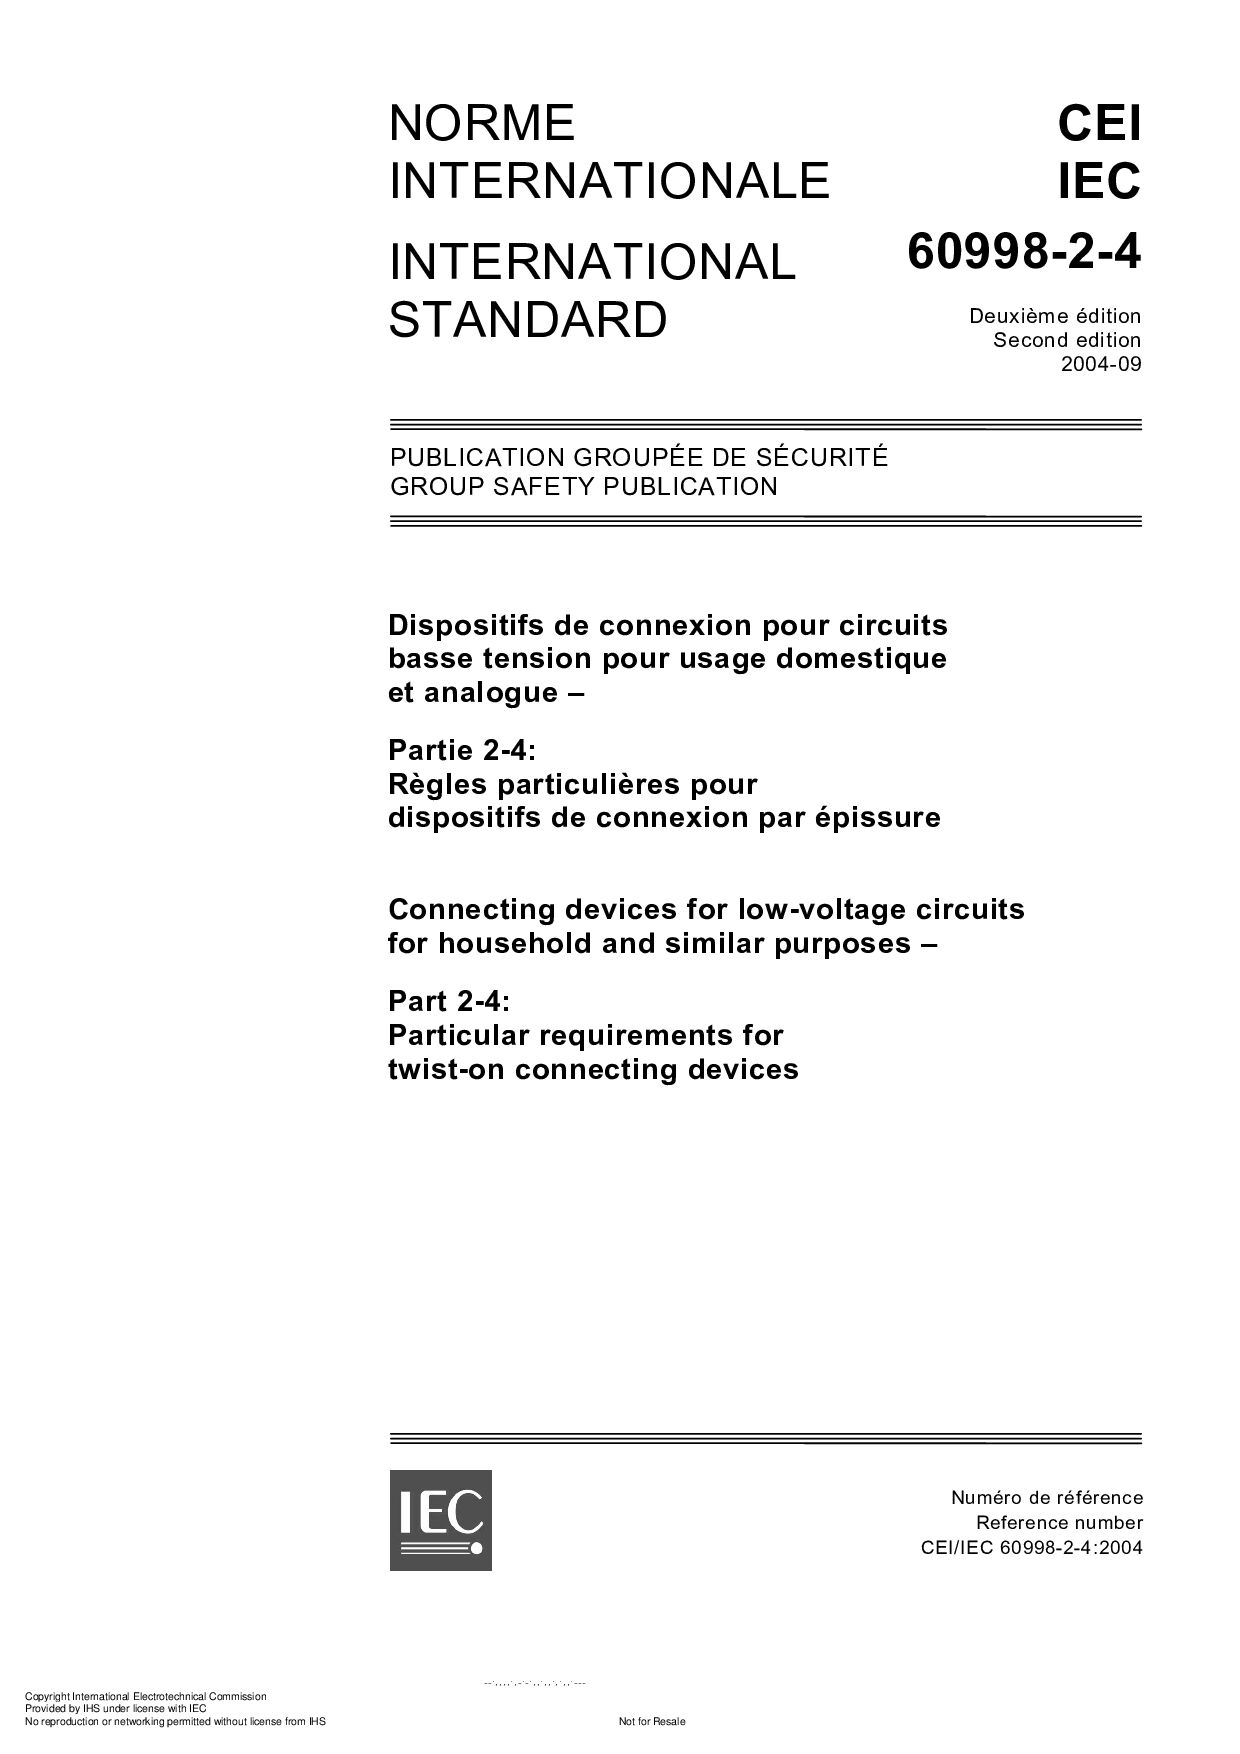 IEC 60998-2-4:2004